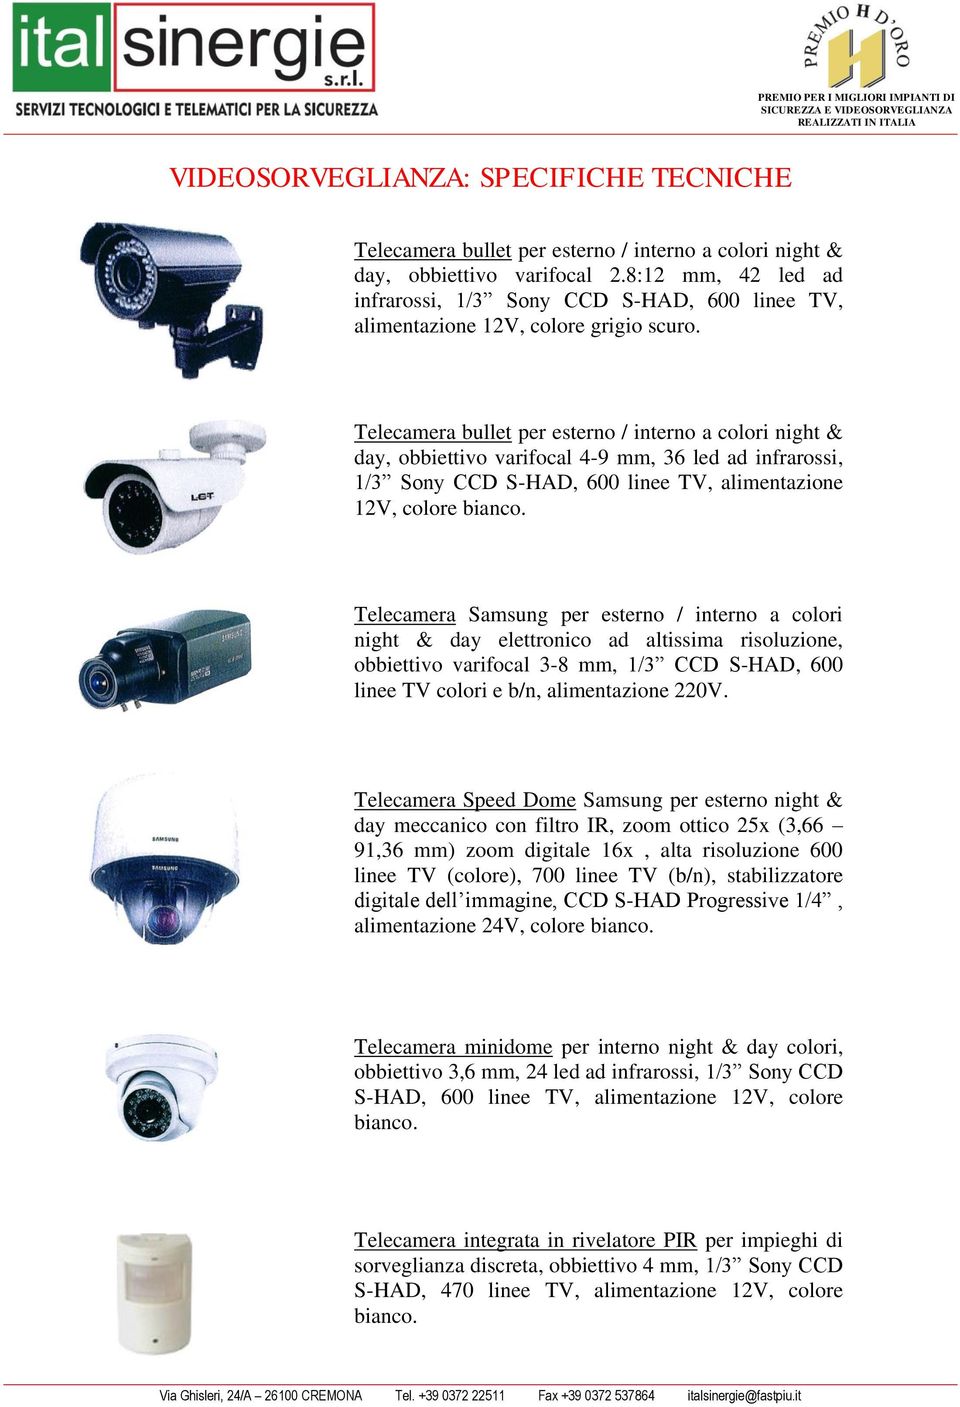 Telecamera bullet per esterno / interno a colori night & day, obbiettivo varifocal 4-9 mm, 36 led ad infrarossi, 1/3 Sony CCD S-HAD, 600 linee TV, alimentazione 12V, colore bianco.